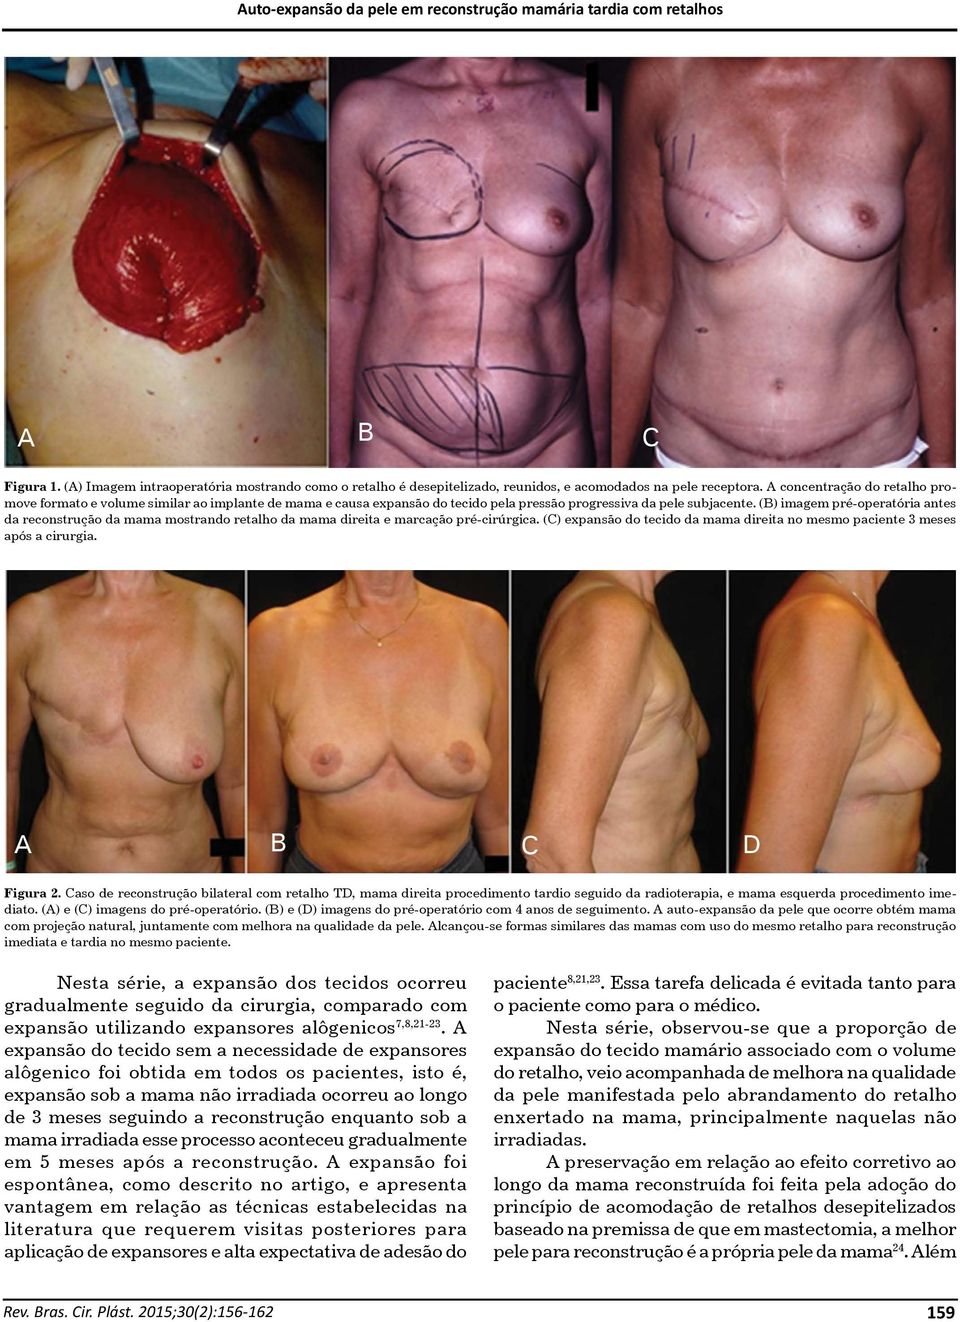 (B) imagem pré-operatória antes da reconstrução da mama mostrando retalho da mama direita e marcação pré-cirúrgica. (C) expansão do tecido da mama direita no mesmo paciente 3 meses após a cirurgia.